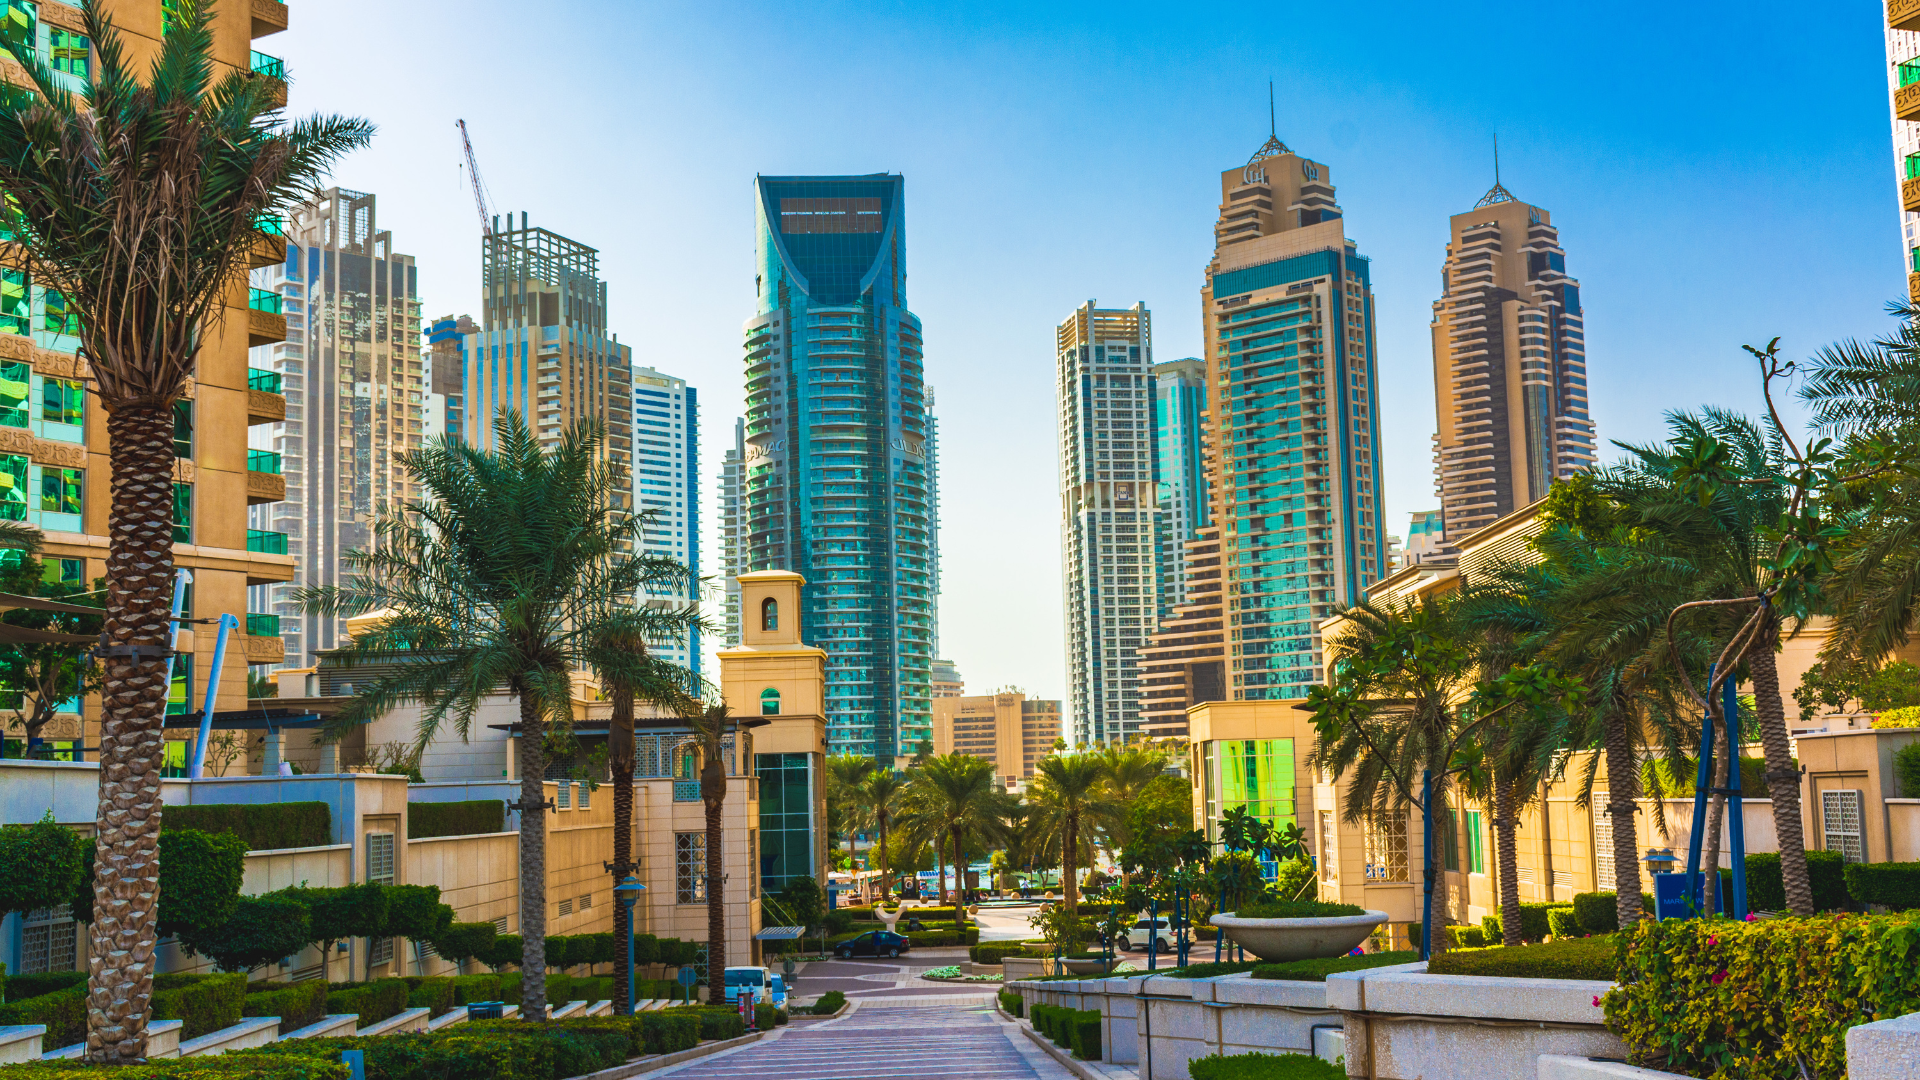 Les Activités incontournables à faire à Dubaï pour vivre des Vacances inoubliables